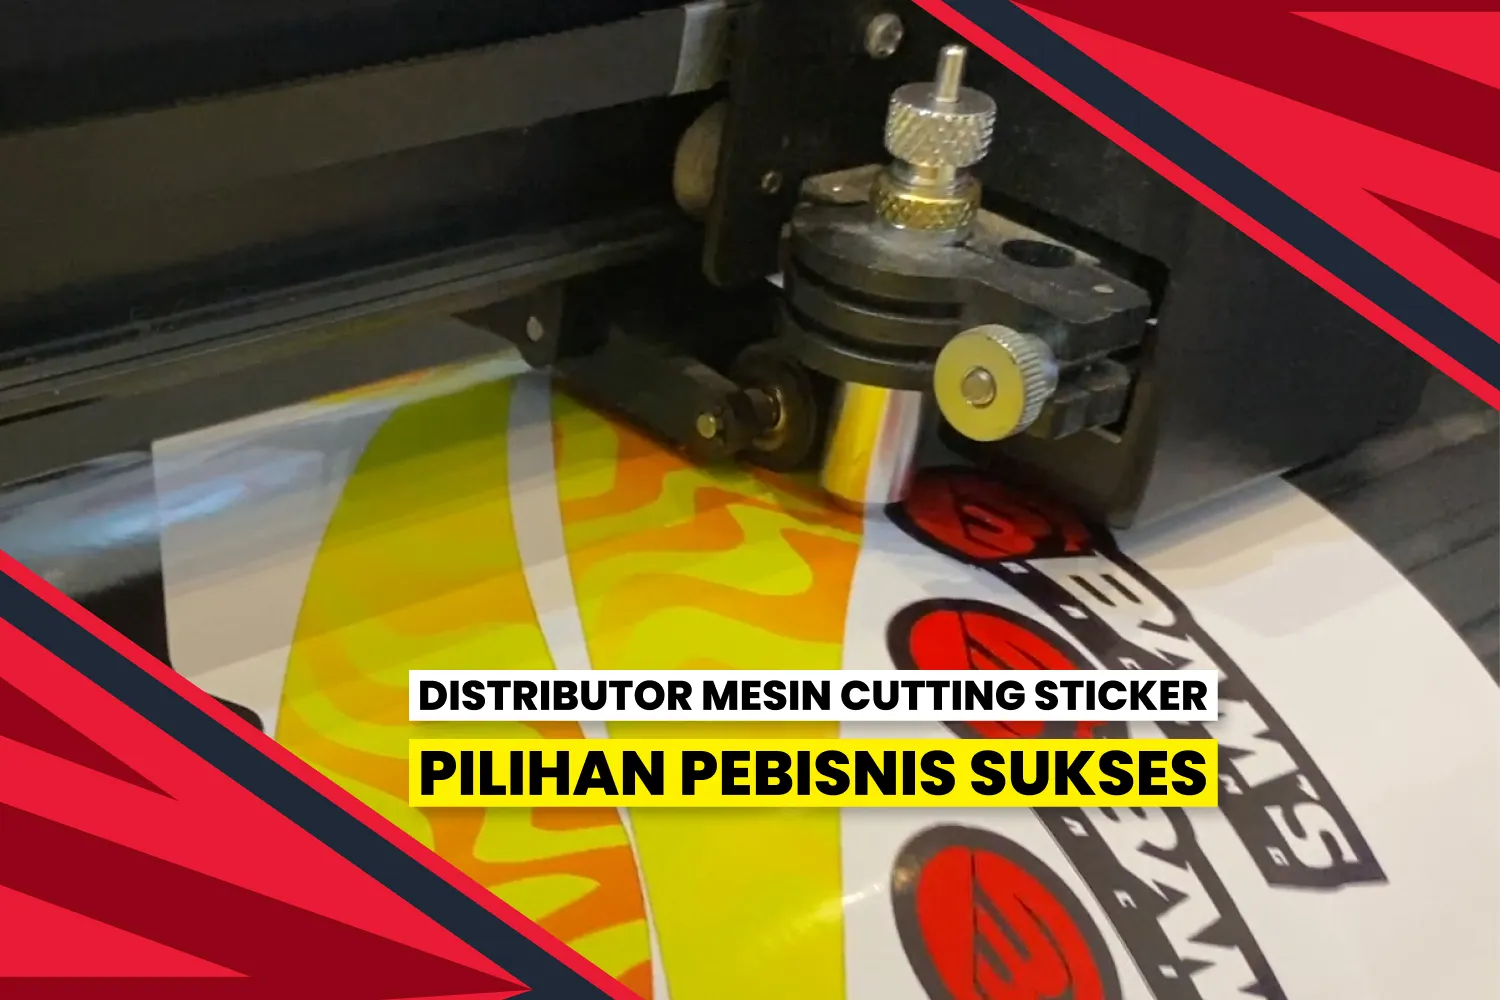 Distributor Mesin Cutting Sticker Terpercaya Di Indonesia.